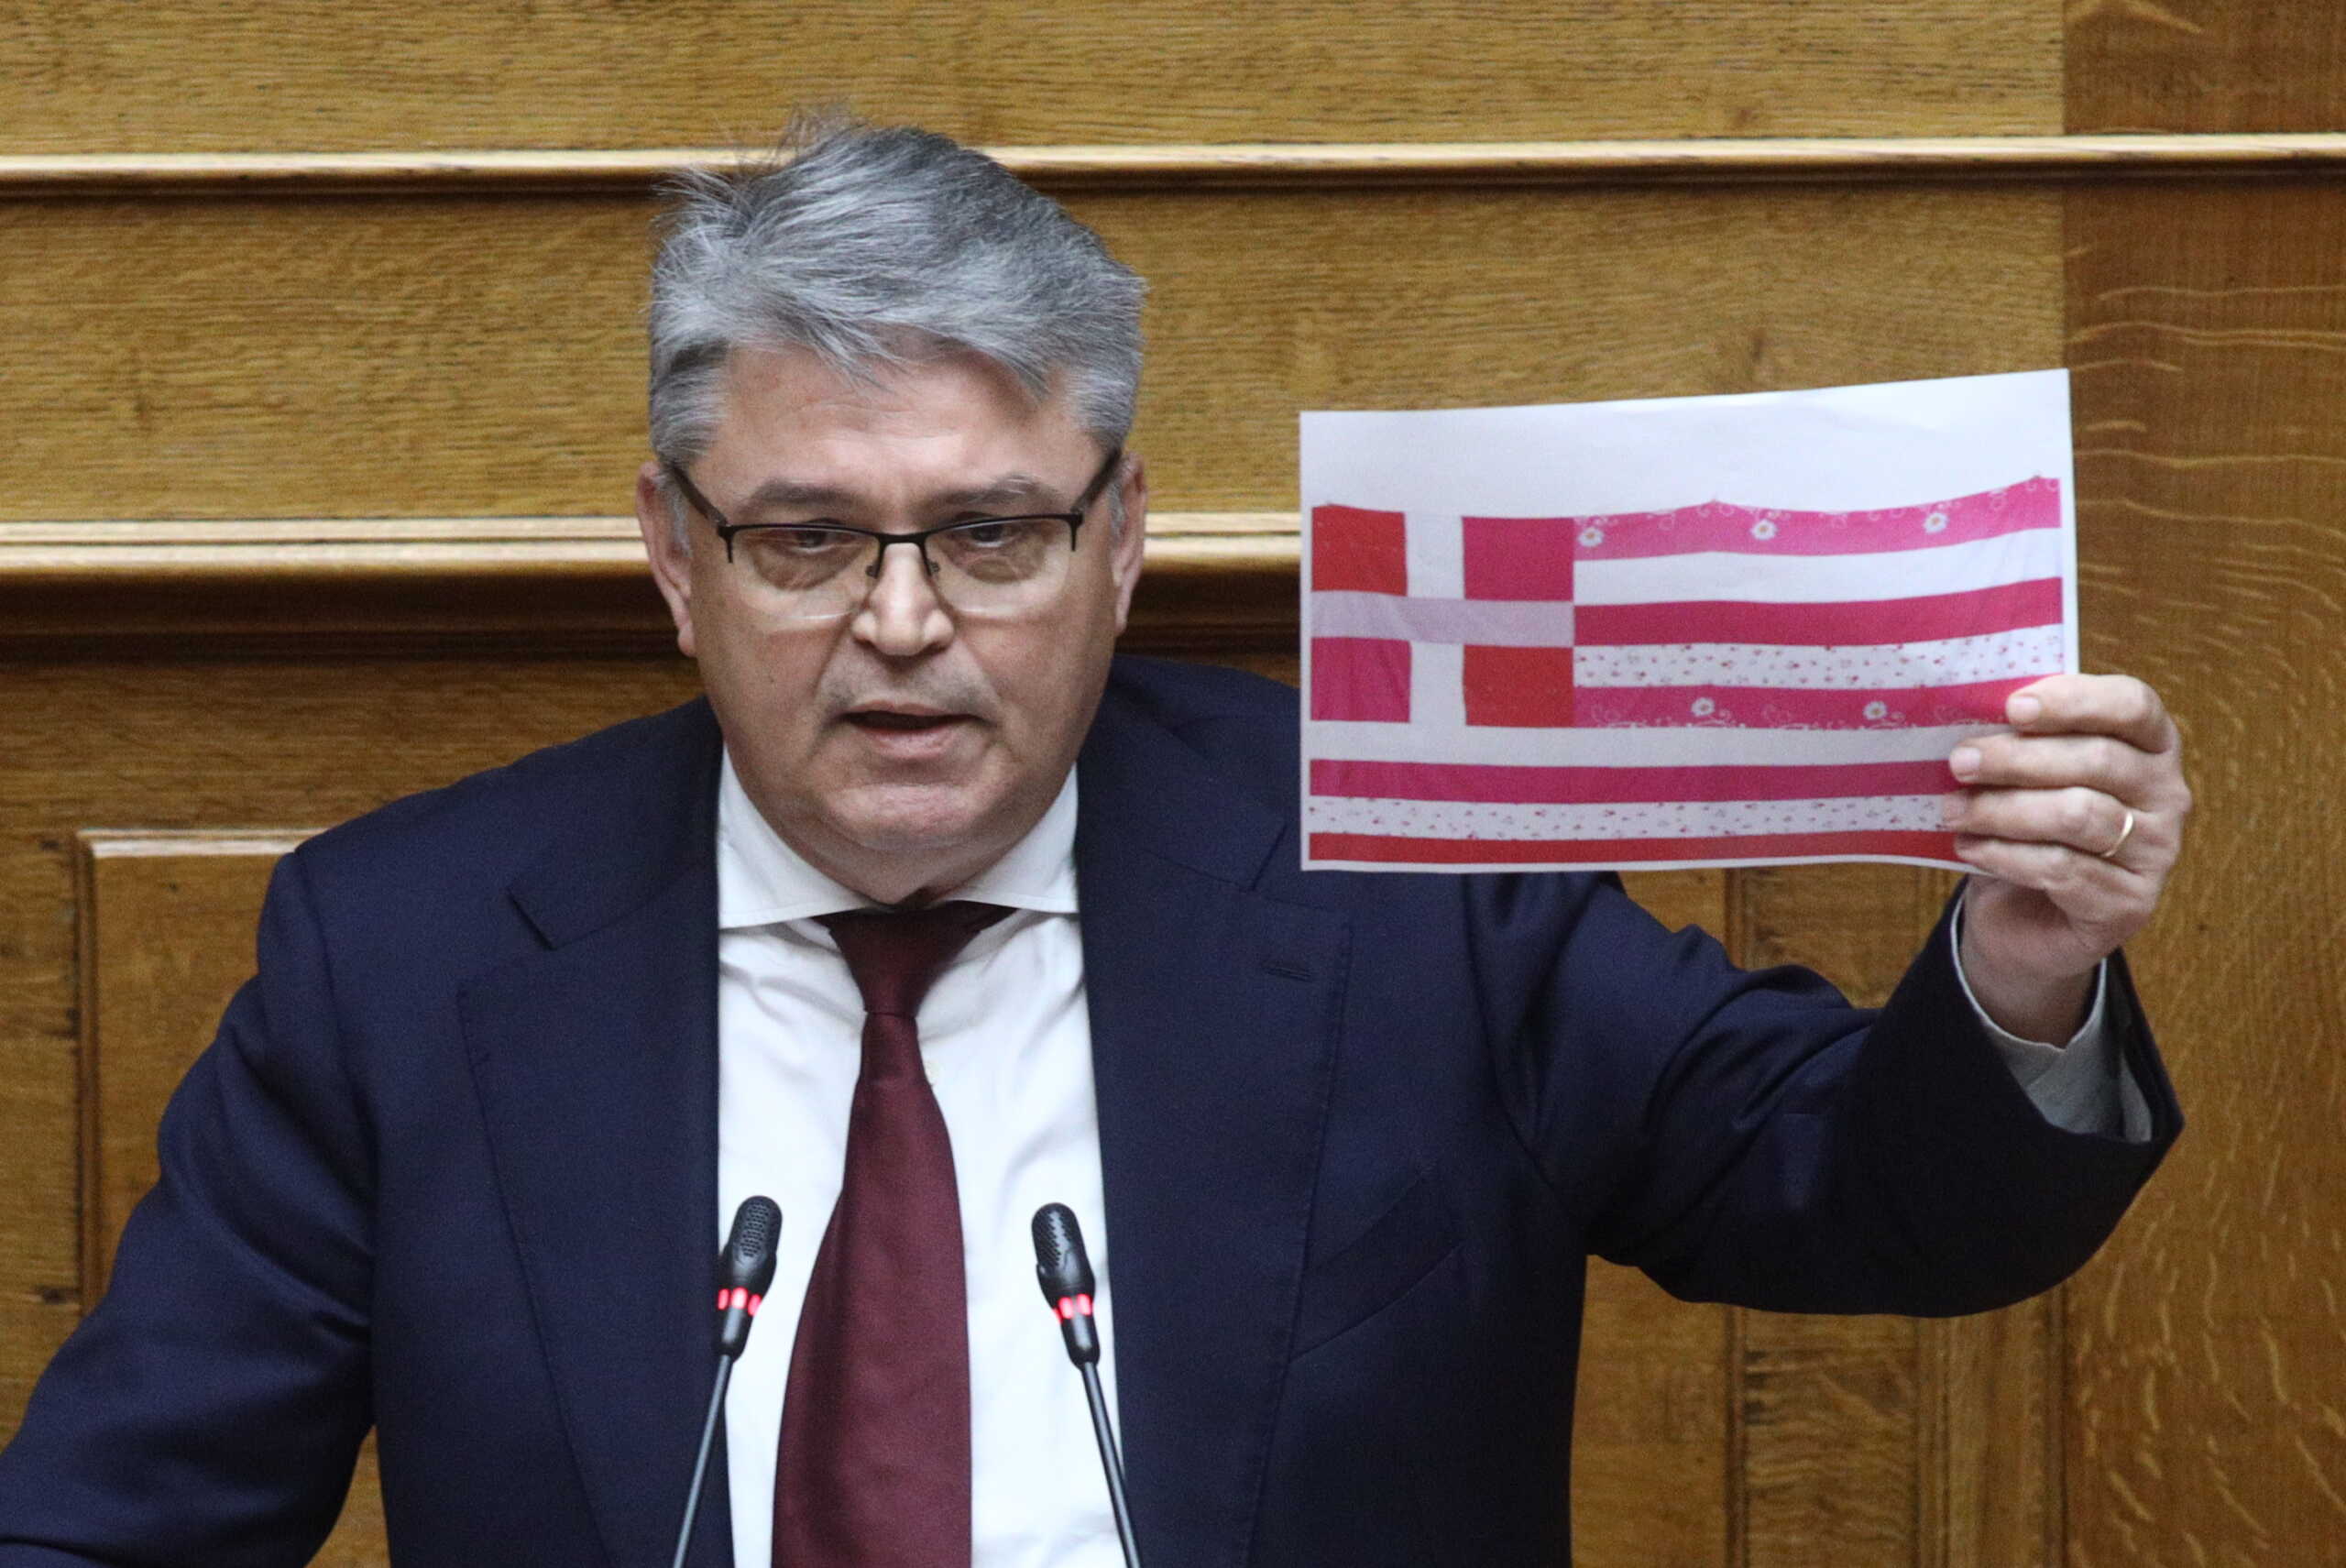 Προϋπολογισμός 2024 – Δημήτρης Νατσιός: Χωρίς Έλληνες δεν υπάρχει εθνική οικονομία και ΑΕΠ  – Γιατί έδειξε ροζ ελληνική σημαία